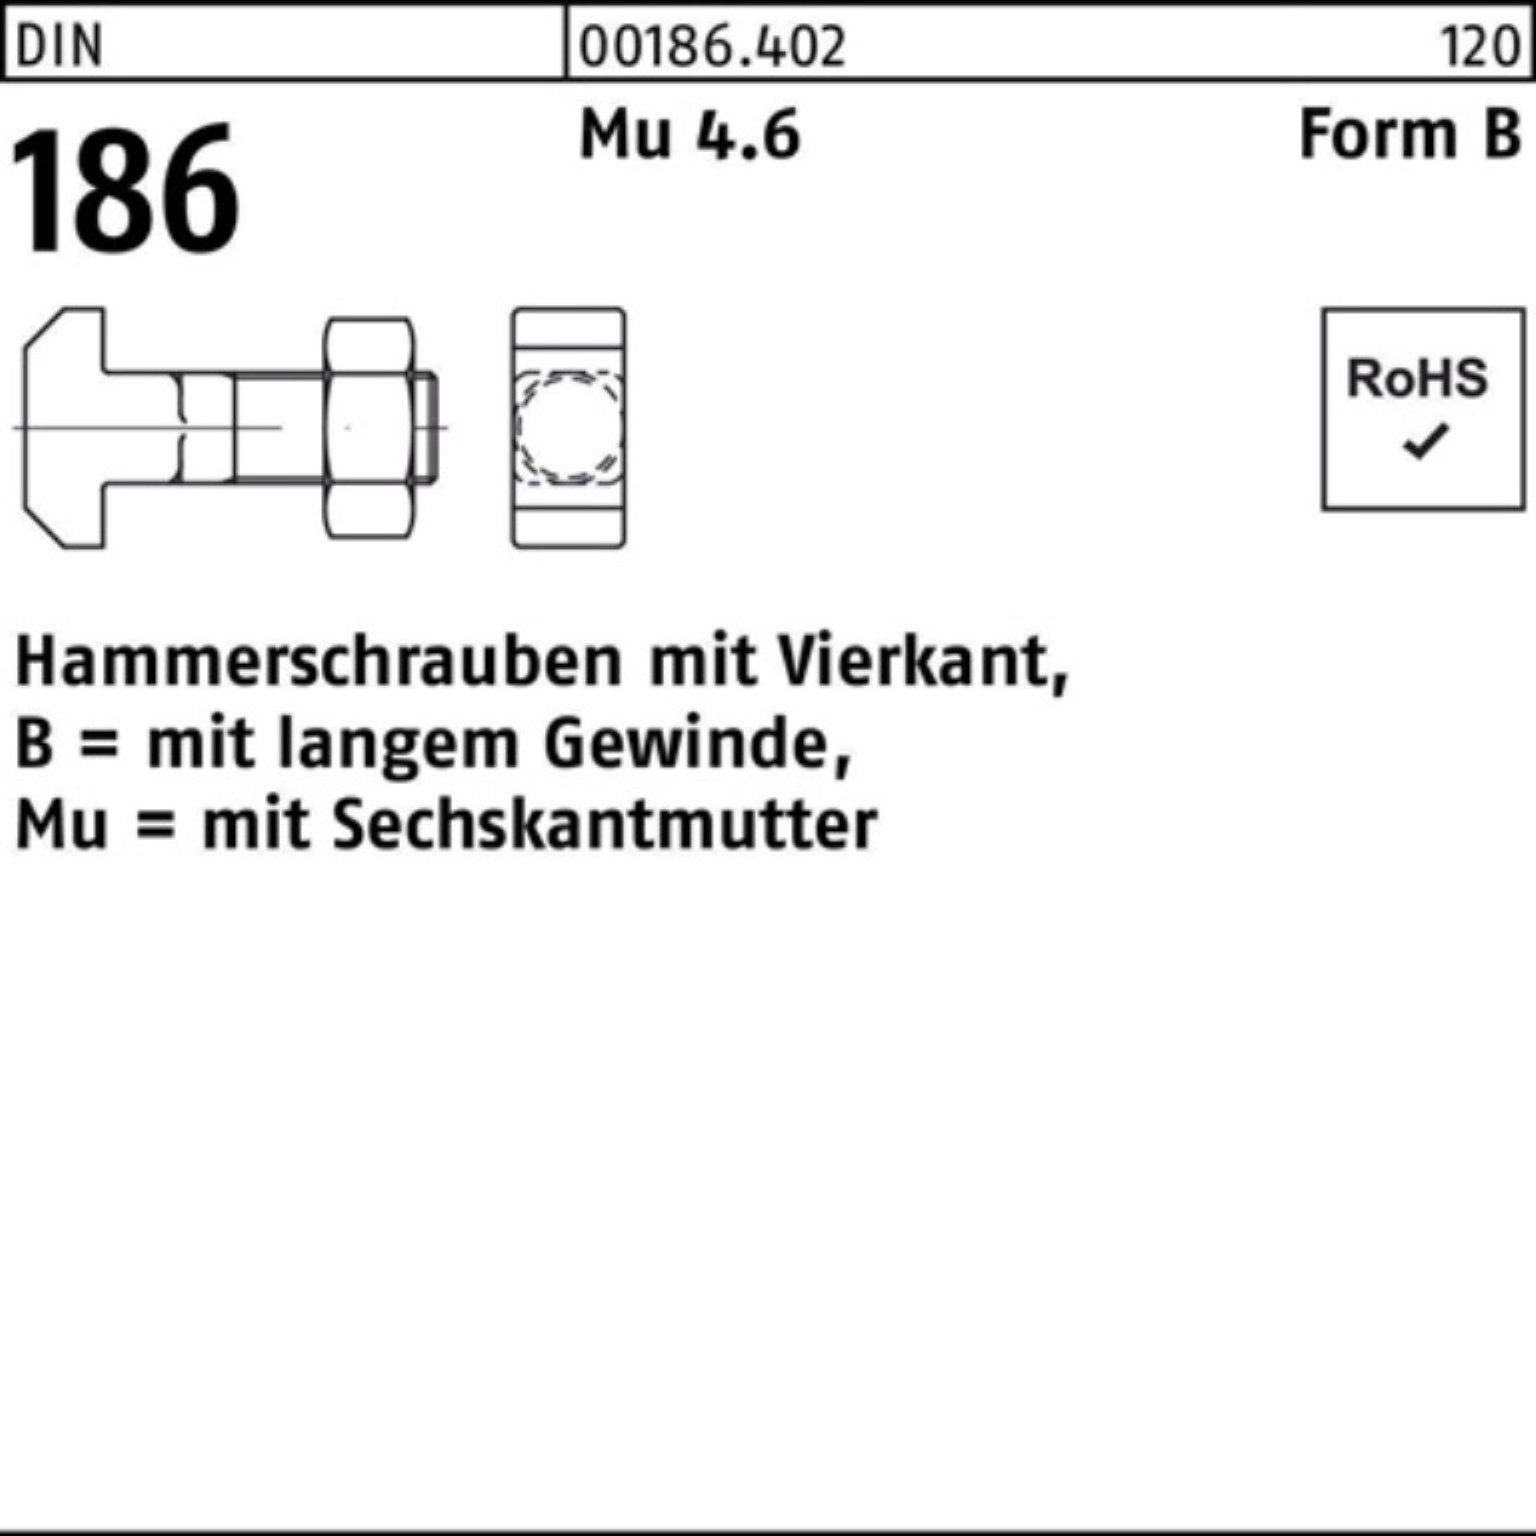 Reyher Schraube 100er Pack Hammerschraube DIN 186 FormB Vierkant 6-ktmutter BM 20x 160